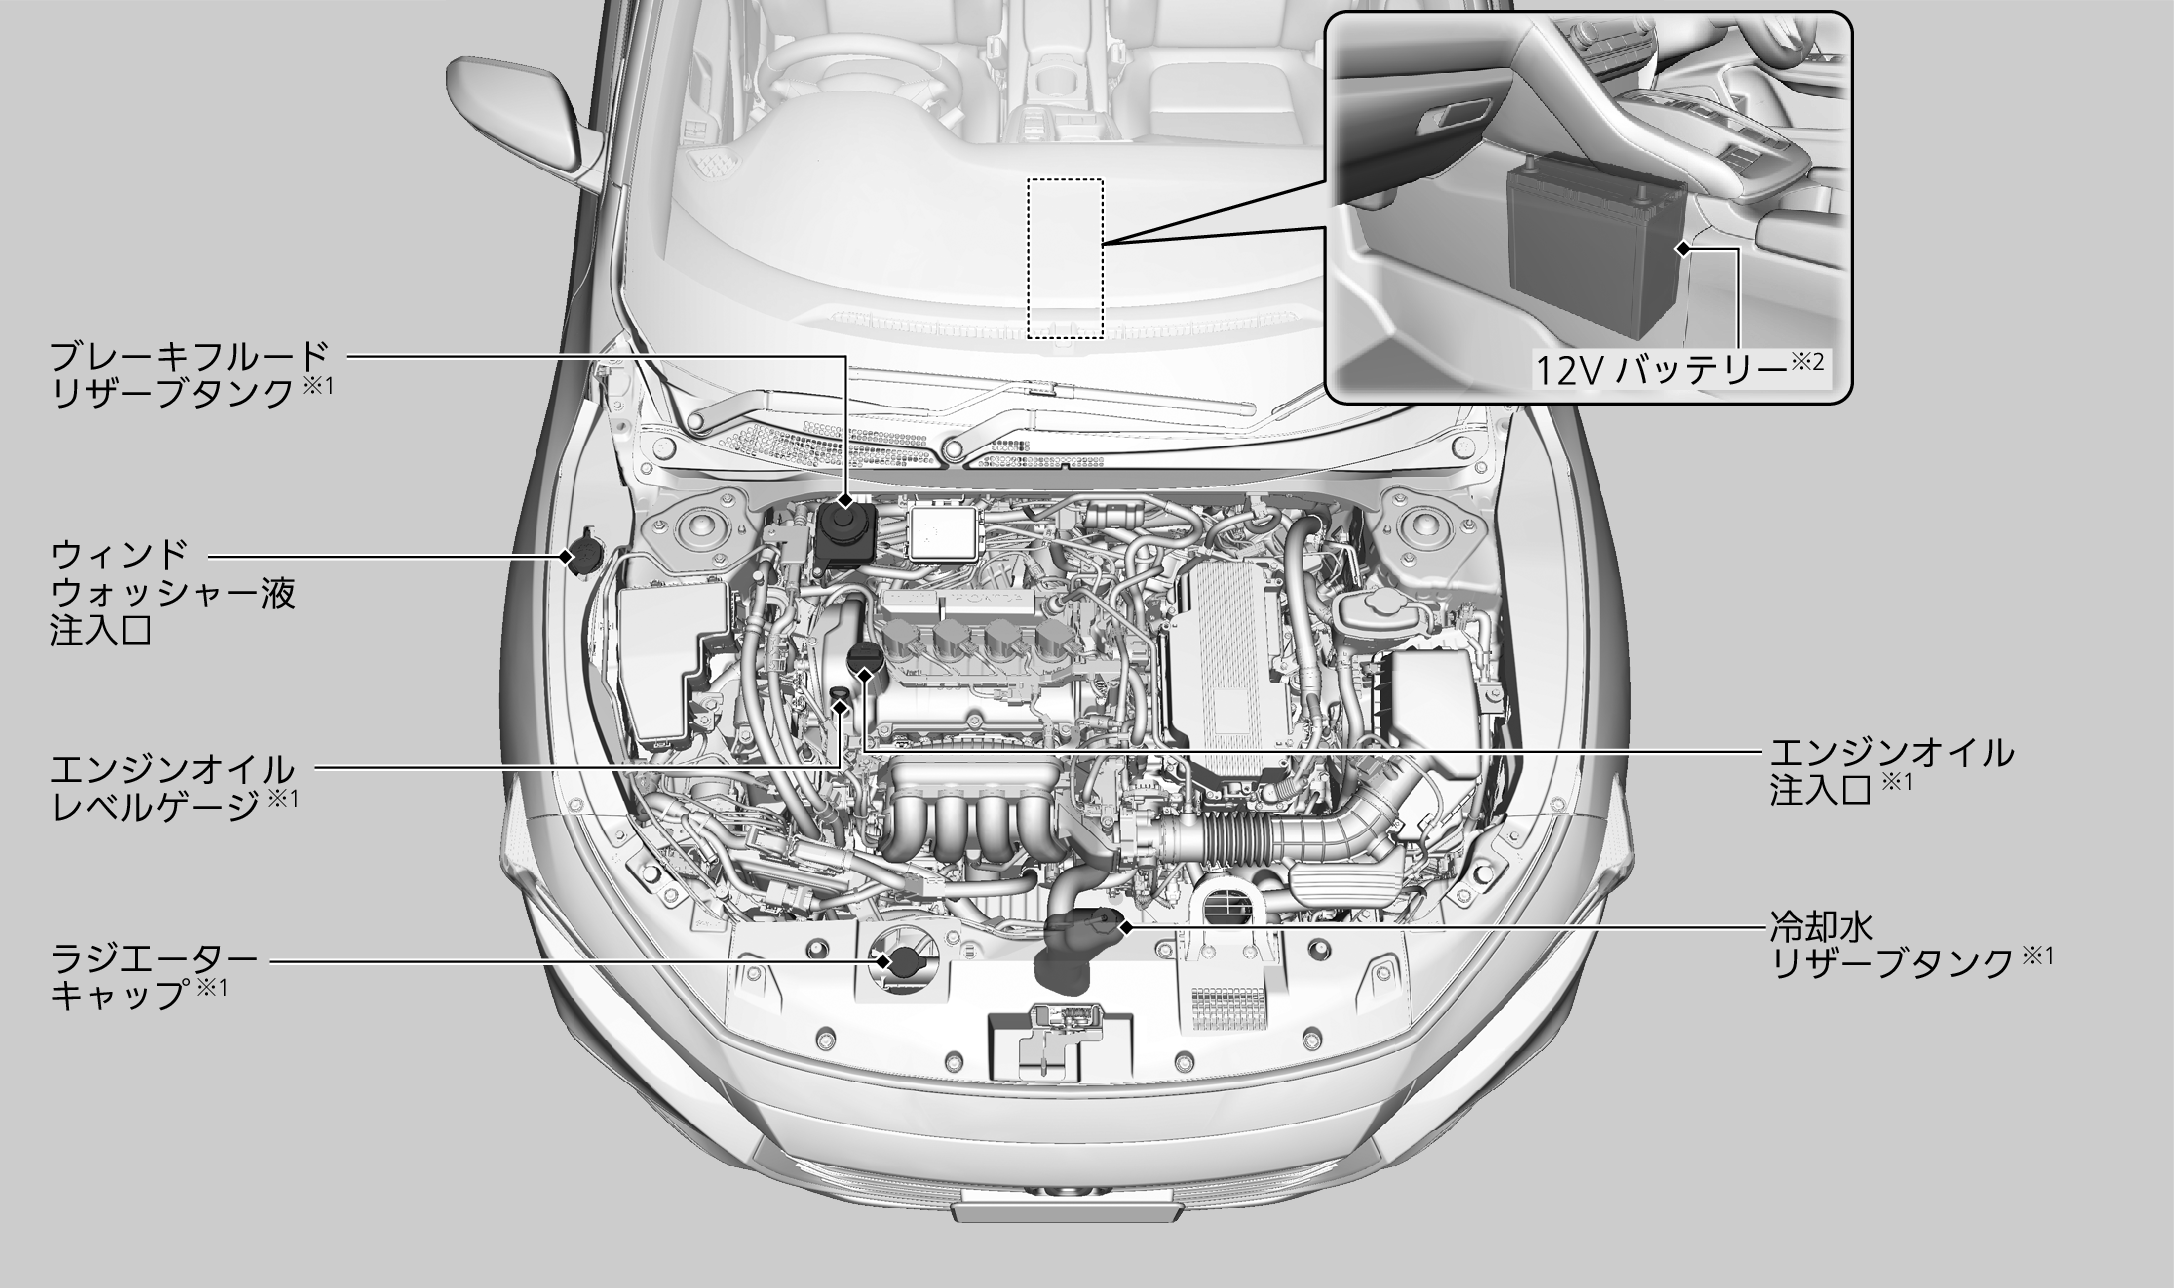 エンジンルーム内のメンテナンス項目 Insight 19 Honda